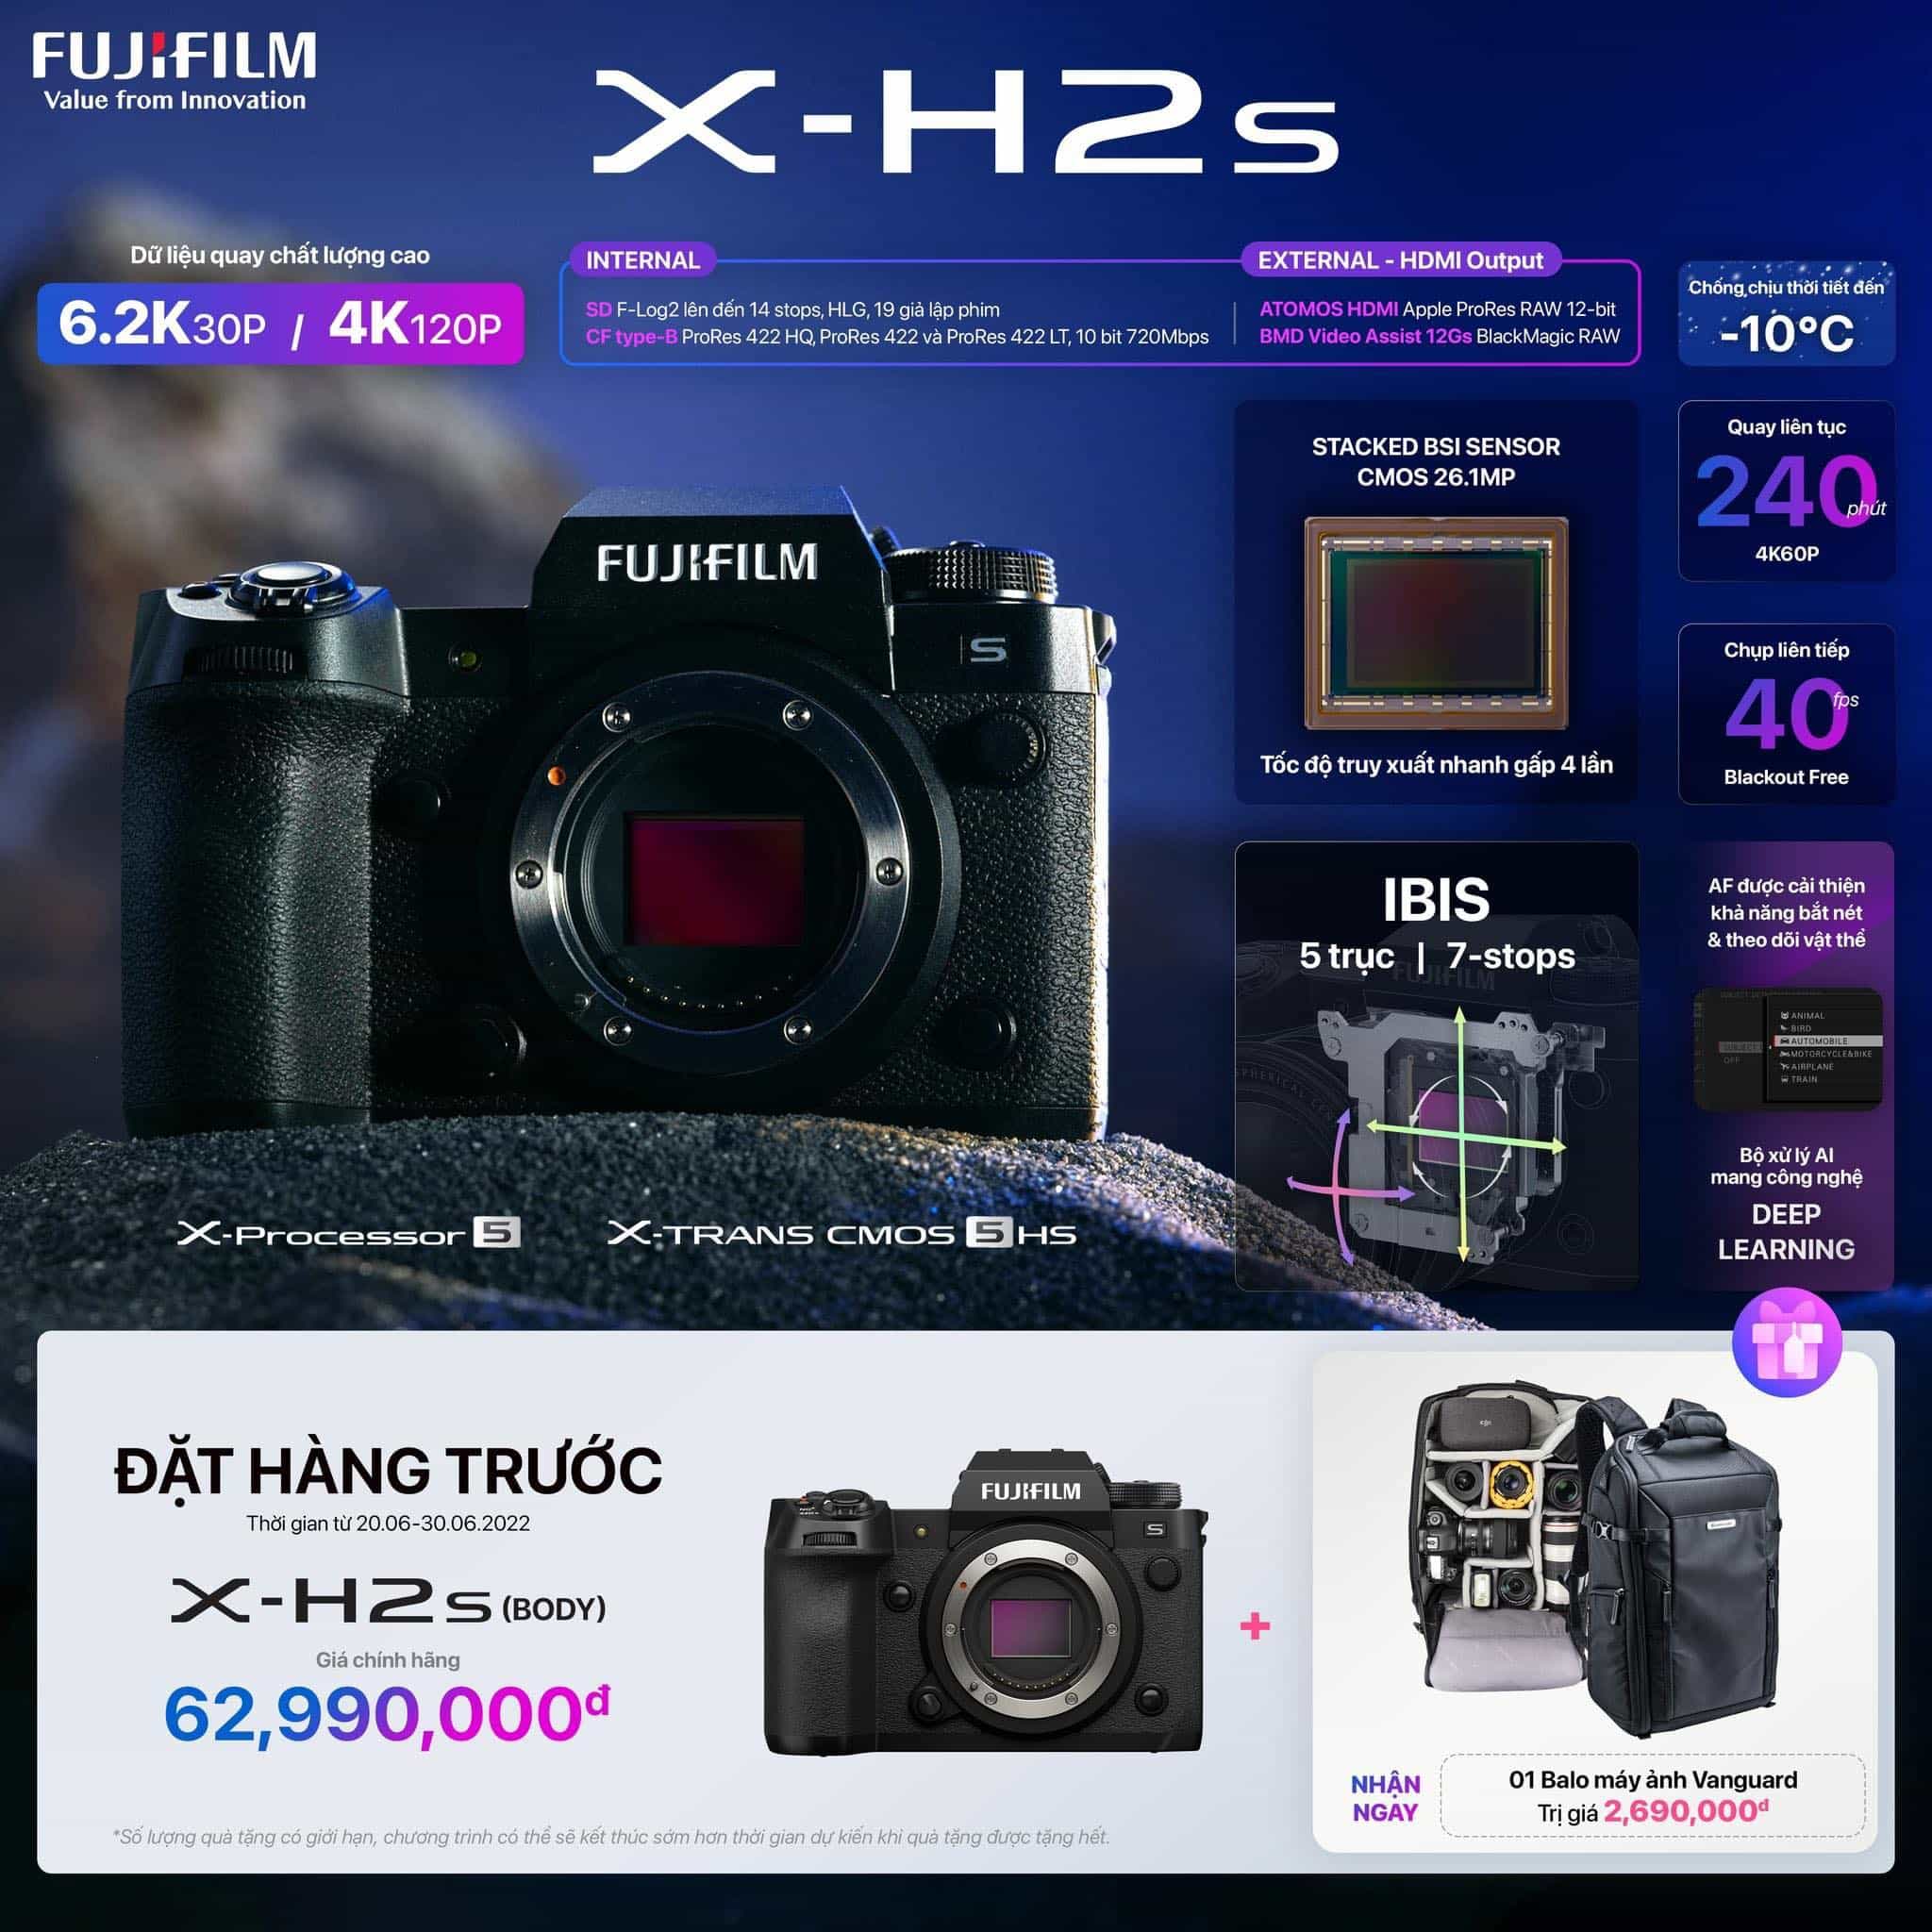 Đặt trước siêu phẩm máy ảnh chuyên quay X-H2s từ Fujifilm, nhận ngay phần quà là balo xịn xò trị giá hơn 2 triệu đồng